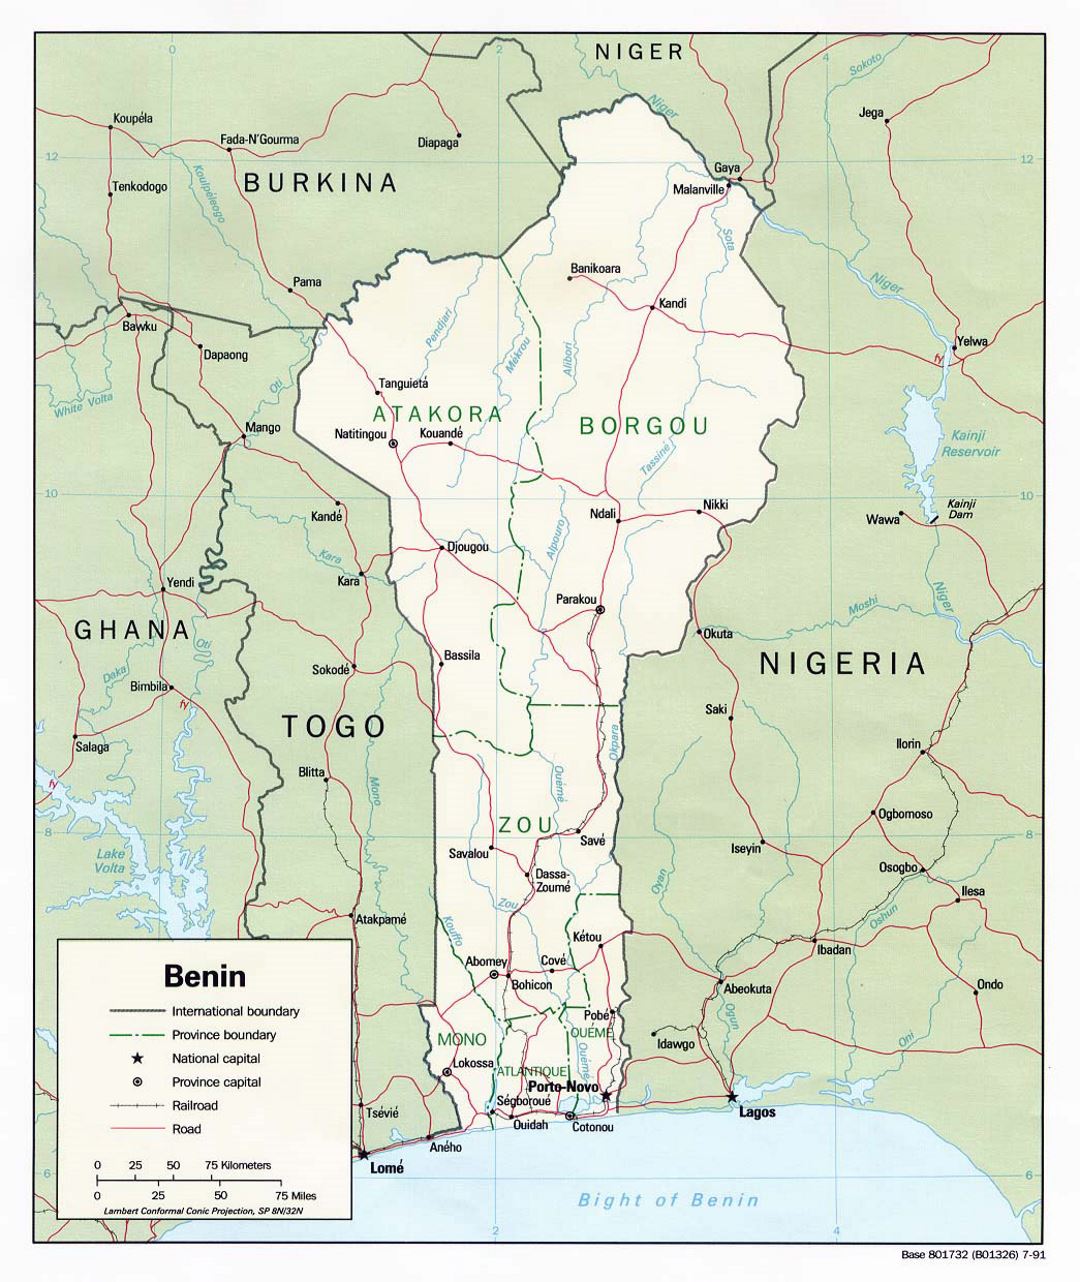 Detallado mapa político y administrativo de Benin con carreteras, ferrocarriles y principales ciudades - 1991